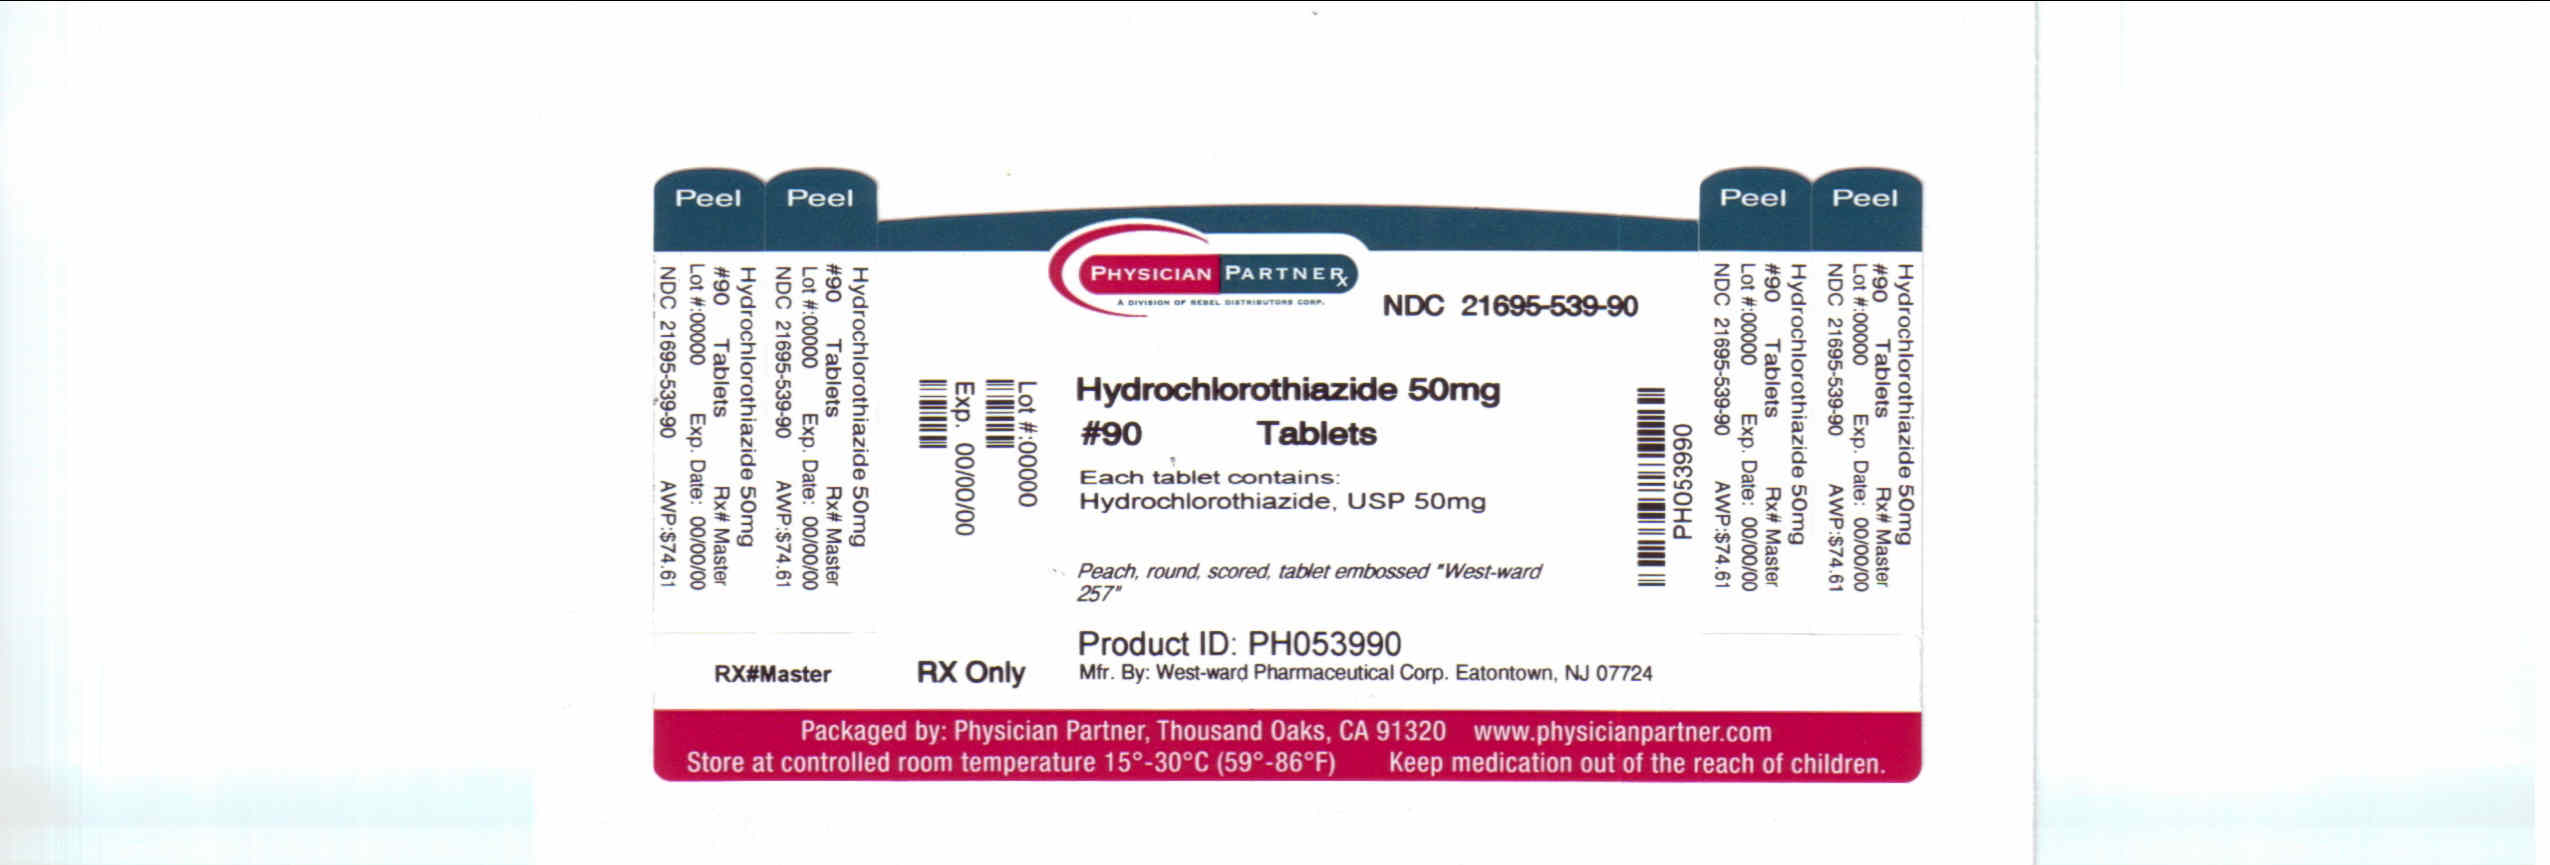 Hydrochlorothiazide 50mg